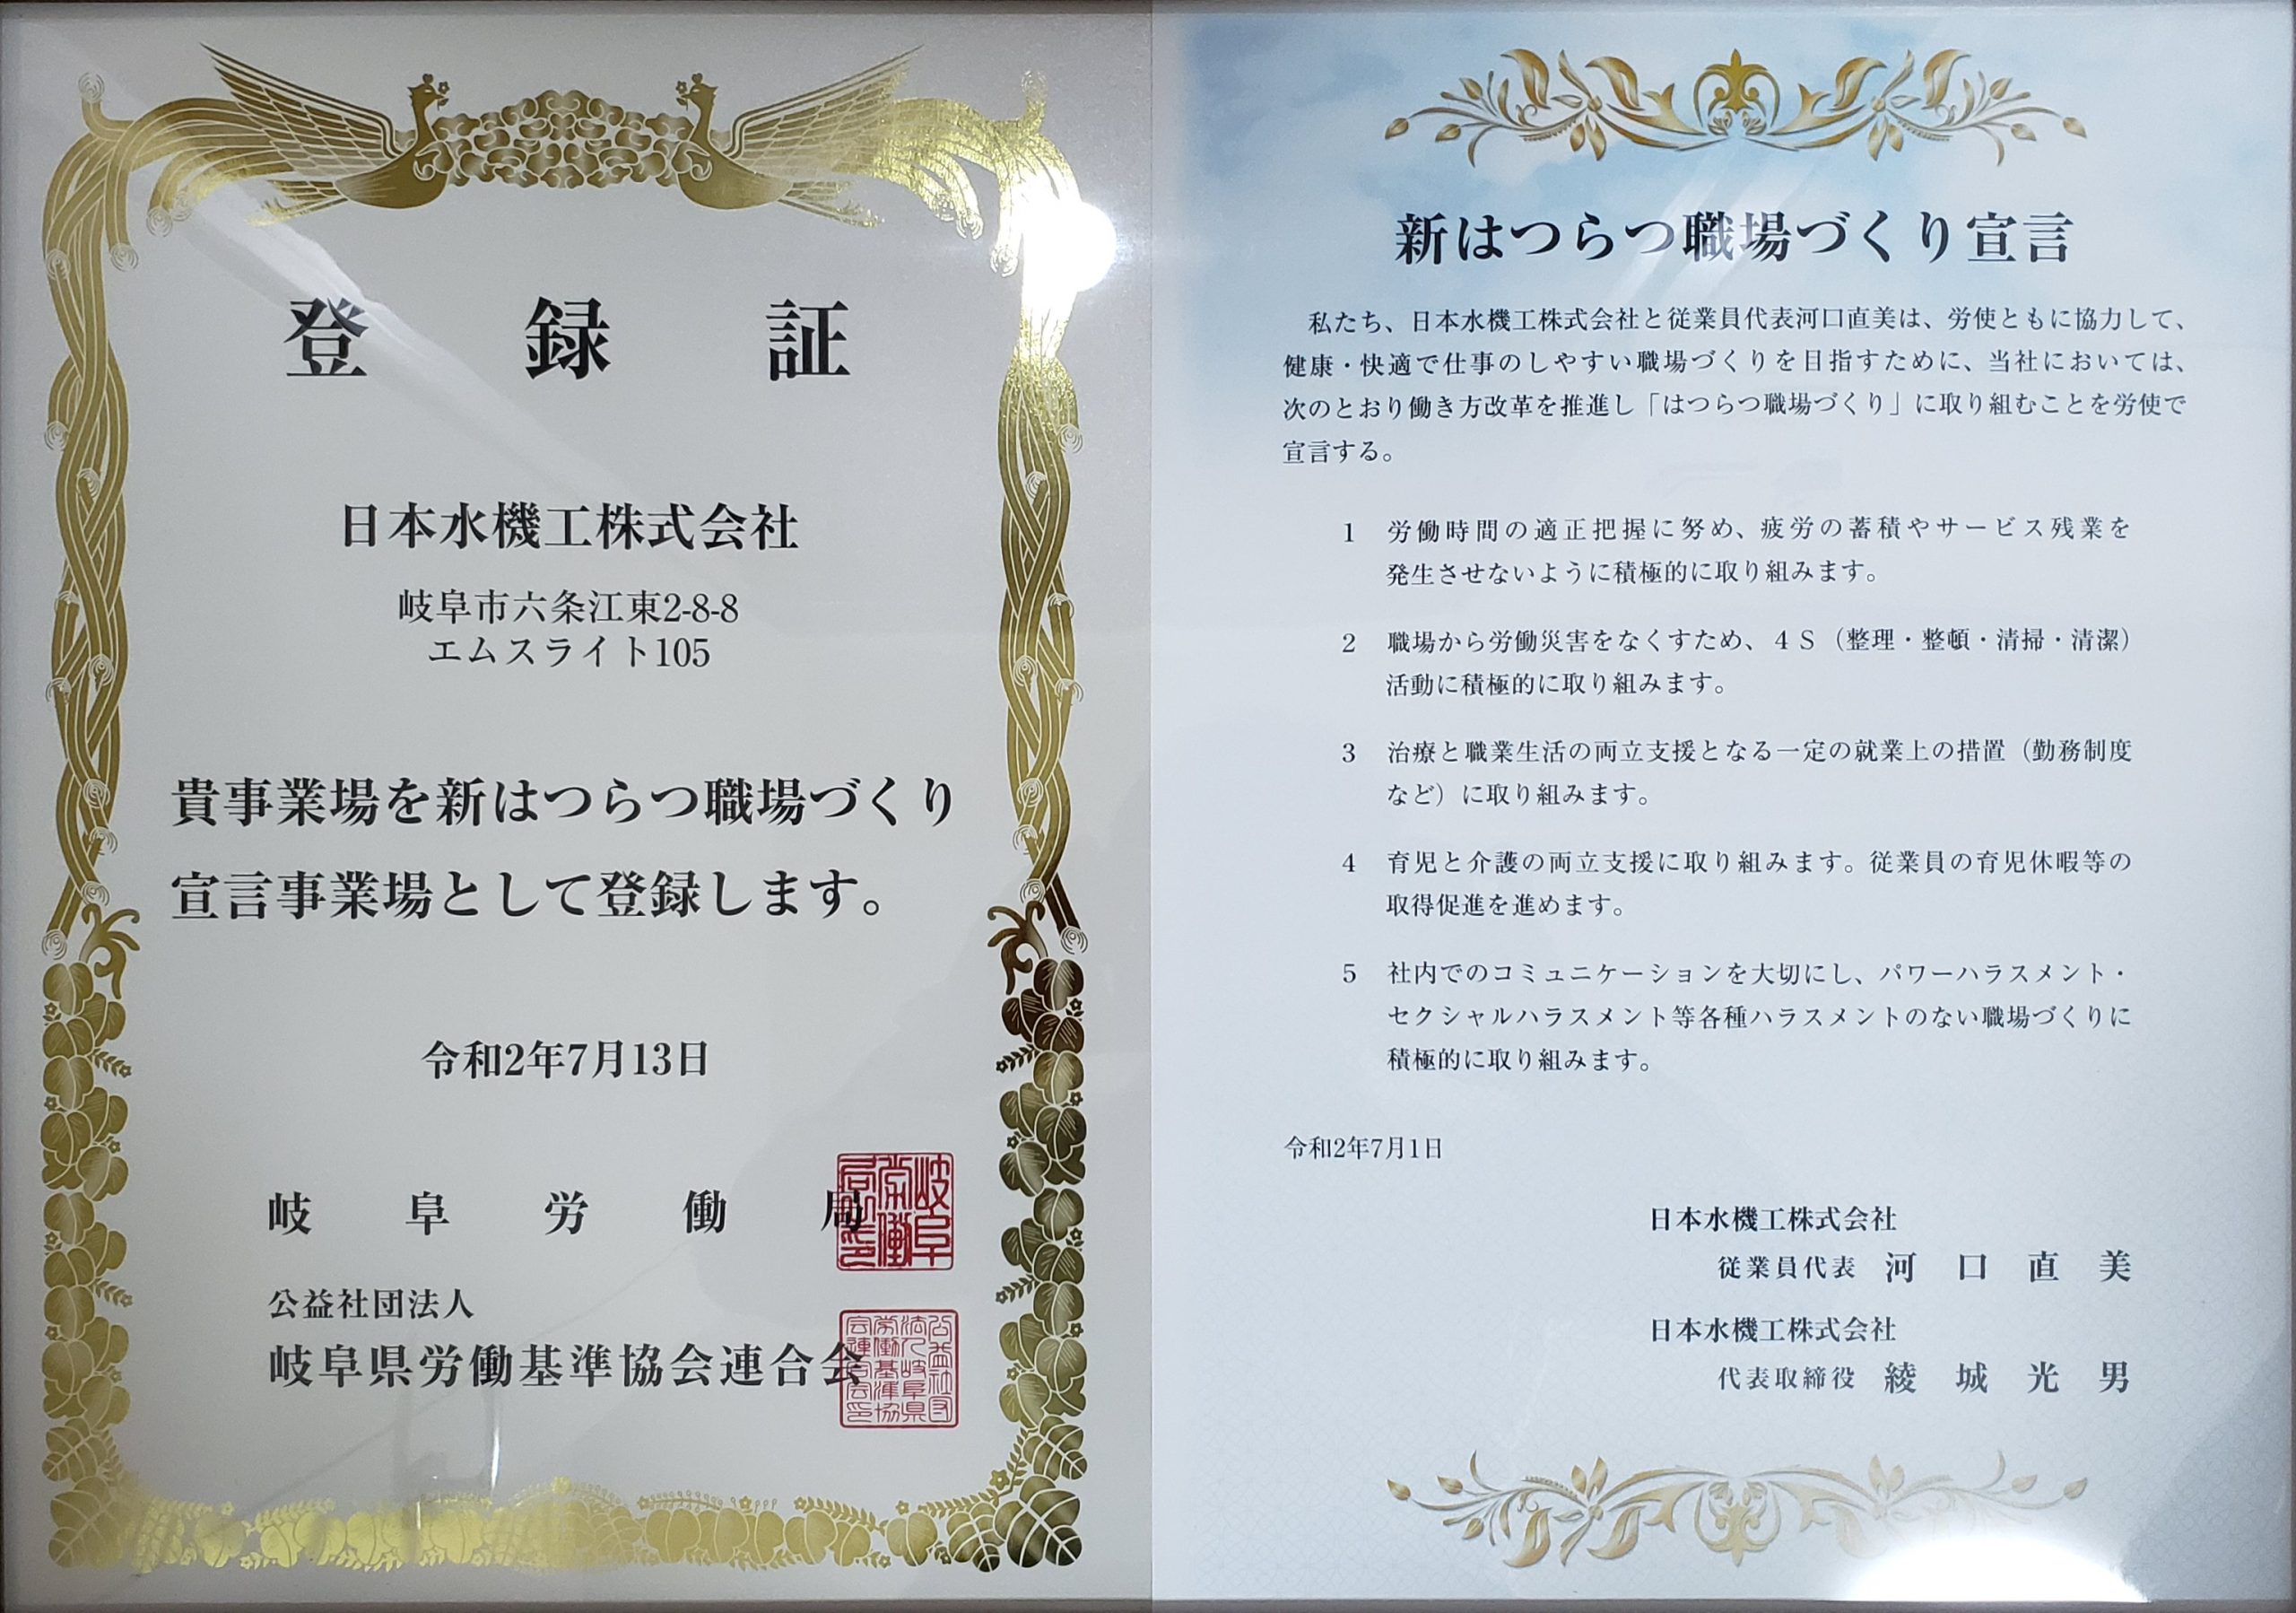 令和2年8月20日　岐阜労働局にて「新はつらつ職場づくり宣言」の登録証・宣言証の贈呈式が行われました。